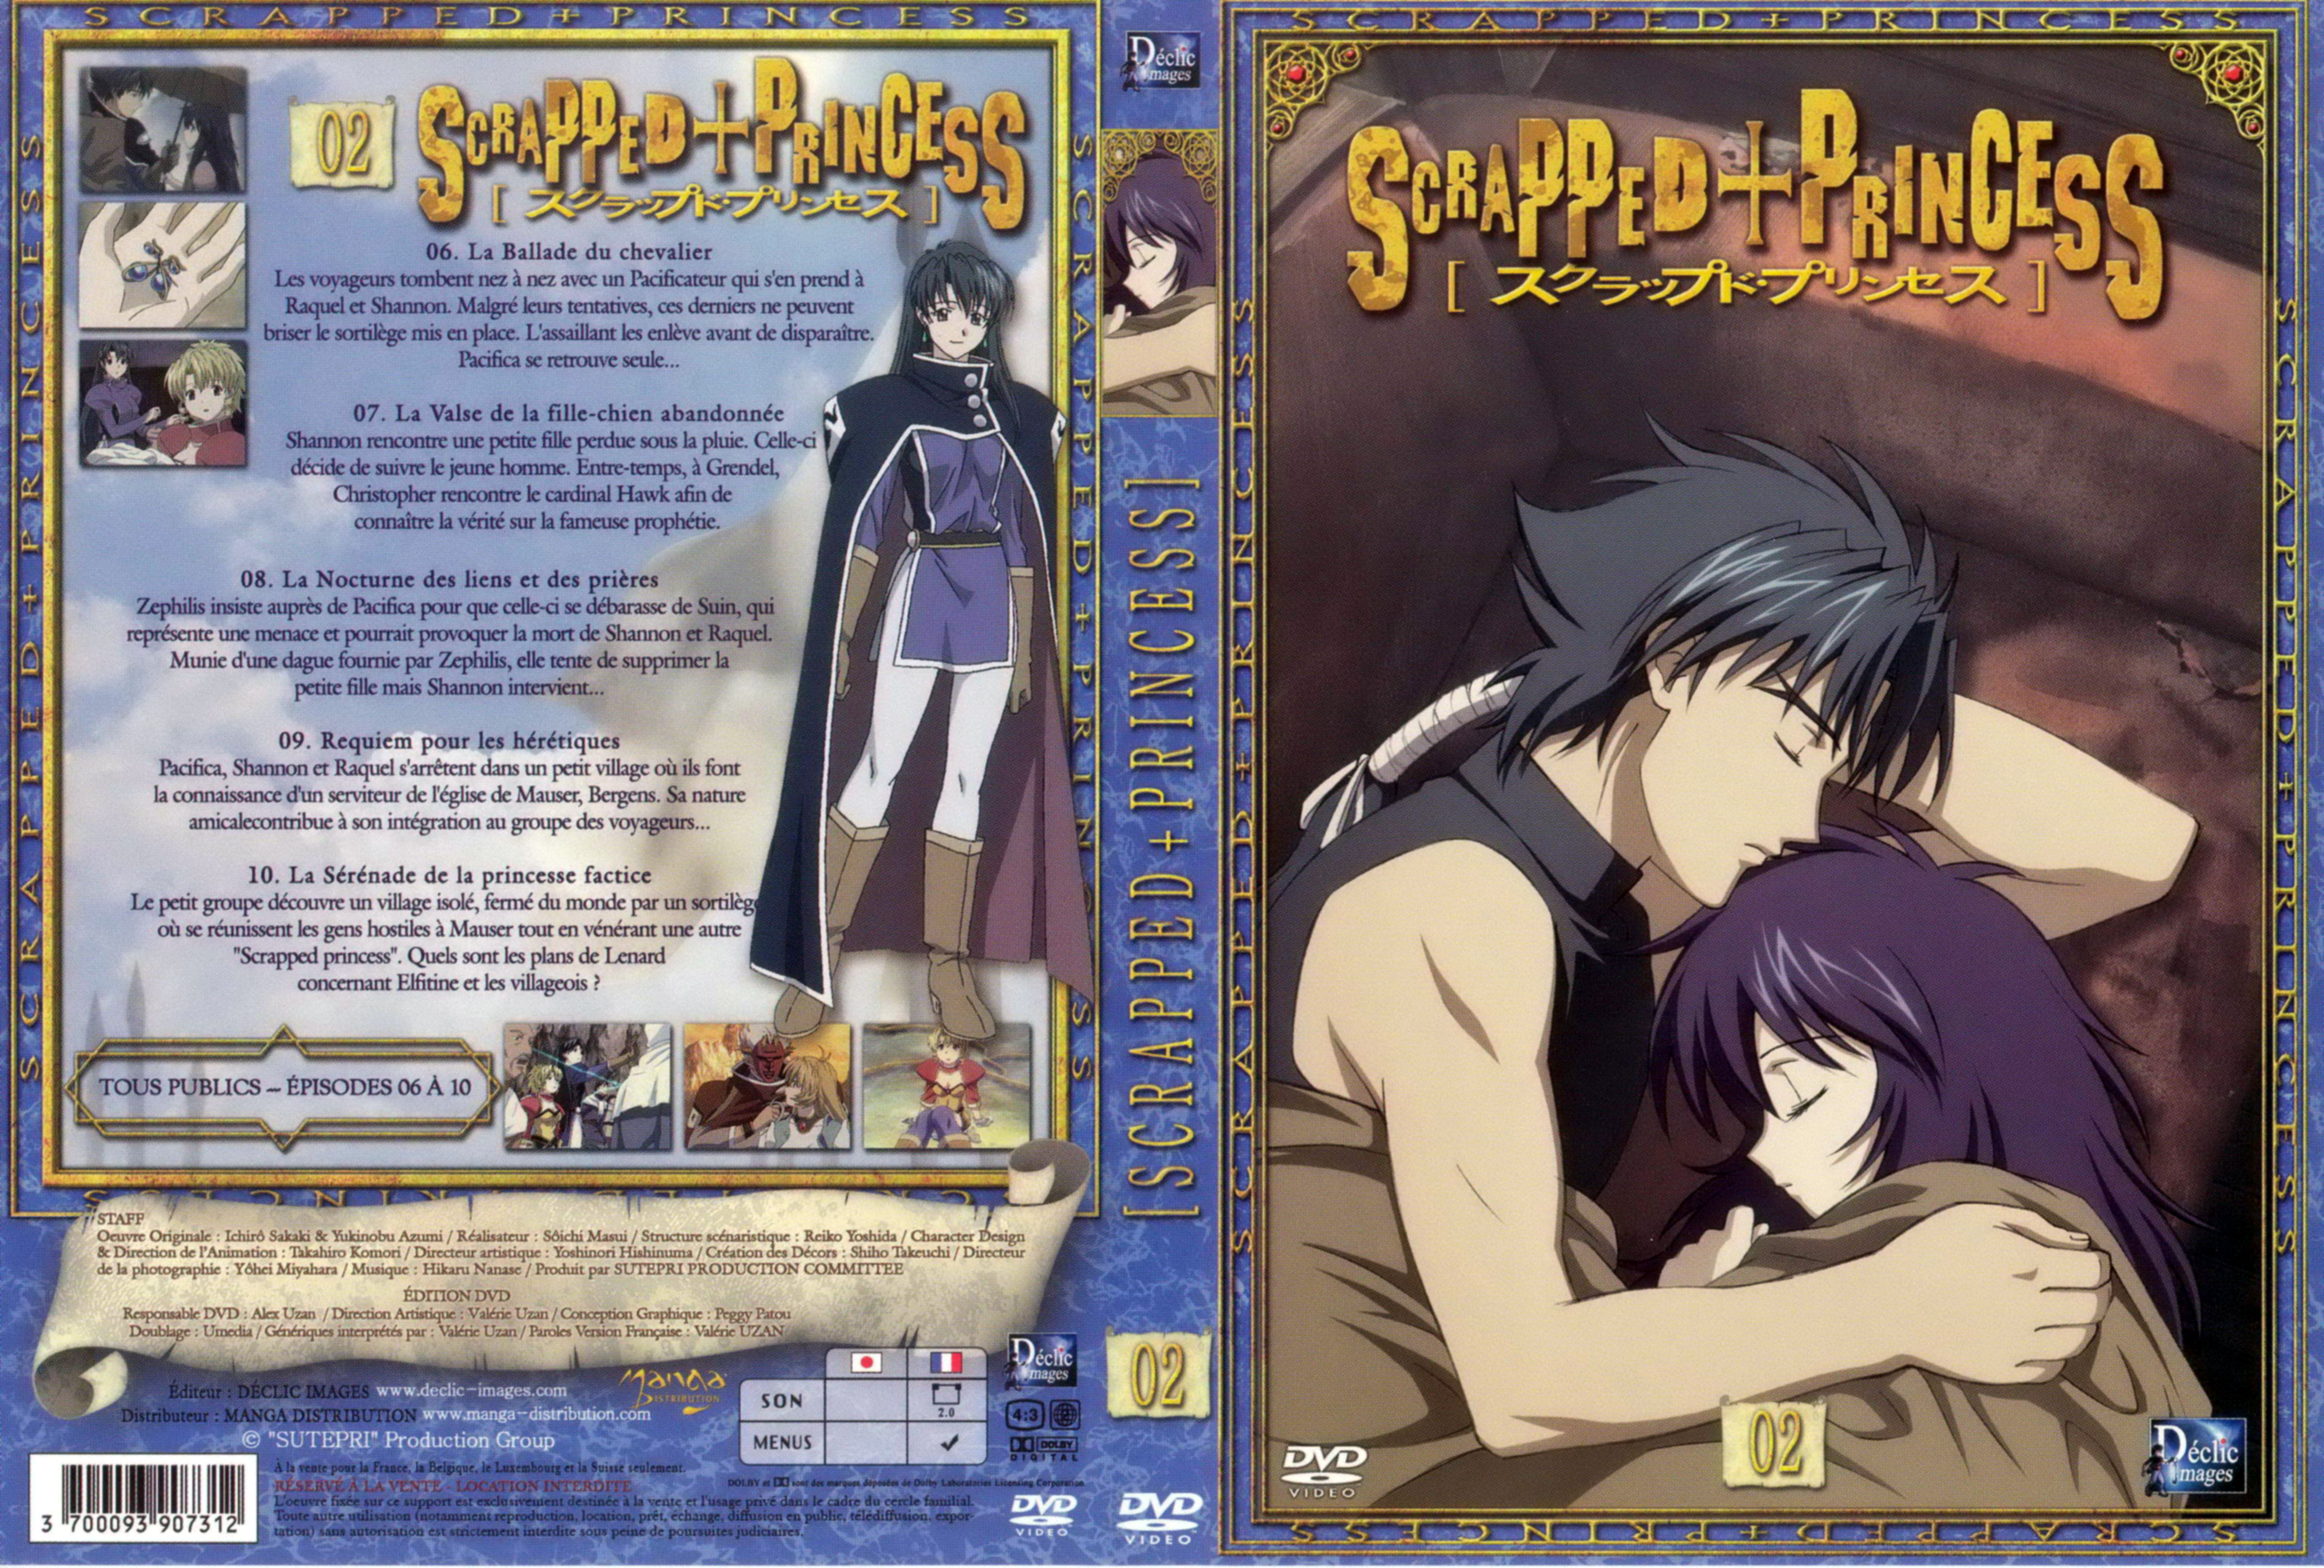 Jaquette DVD Scrapped princess vol 02 v2